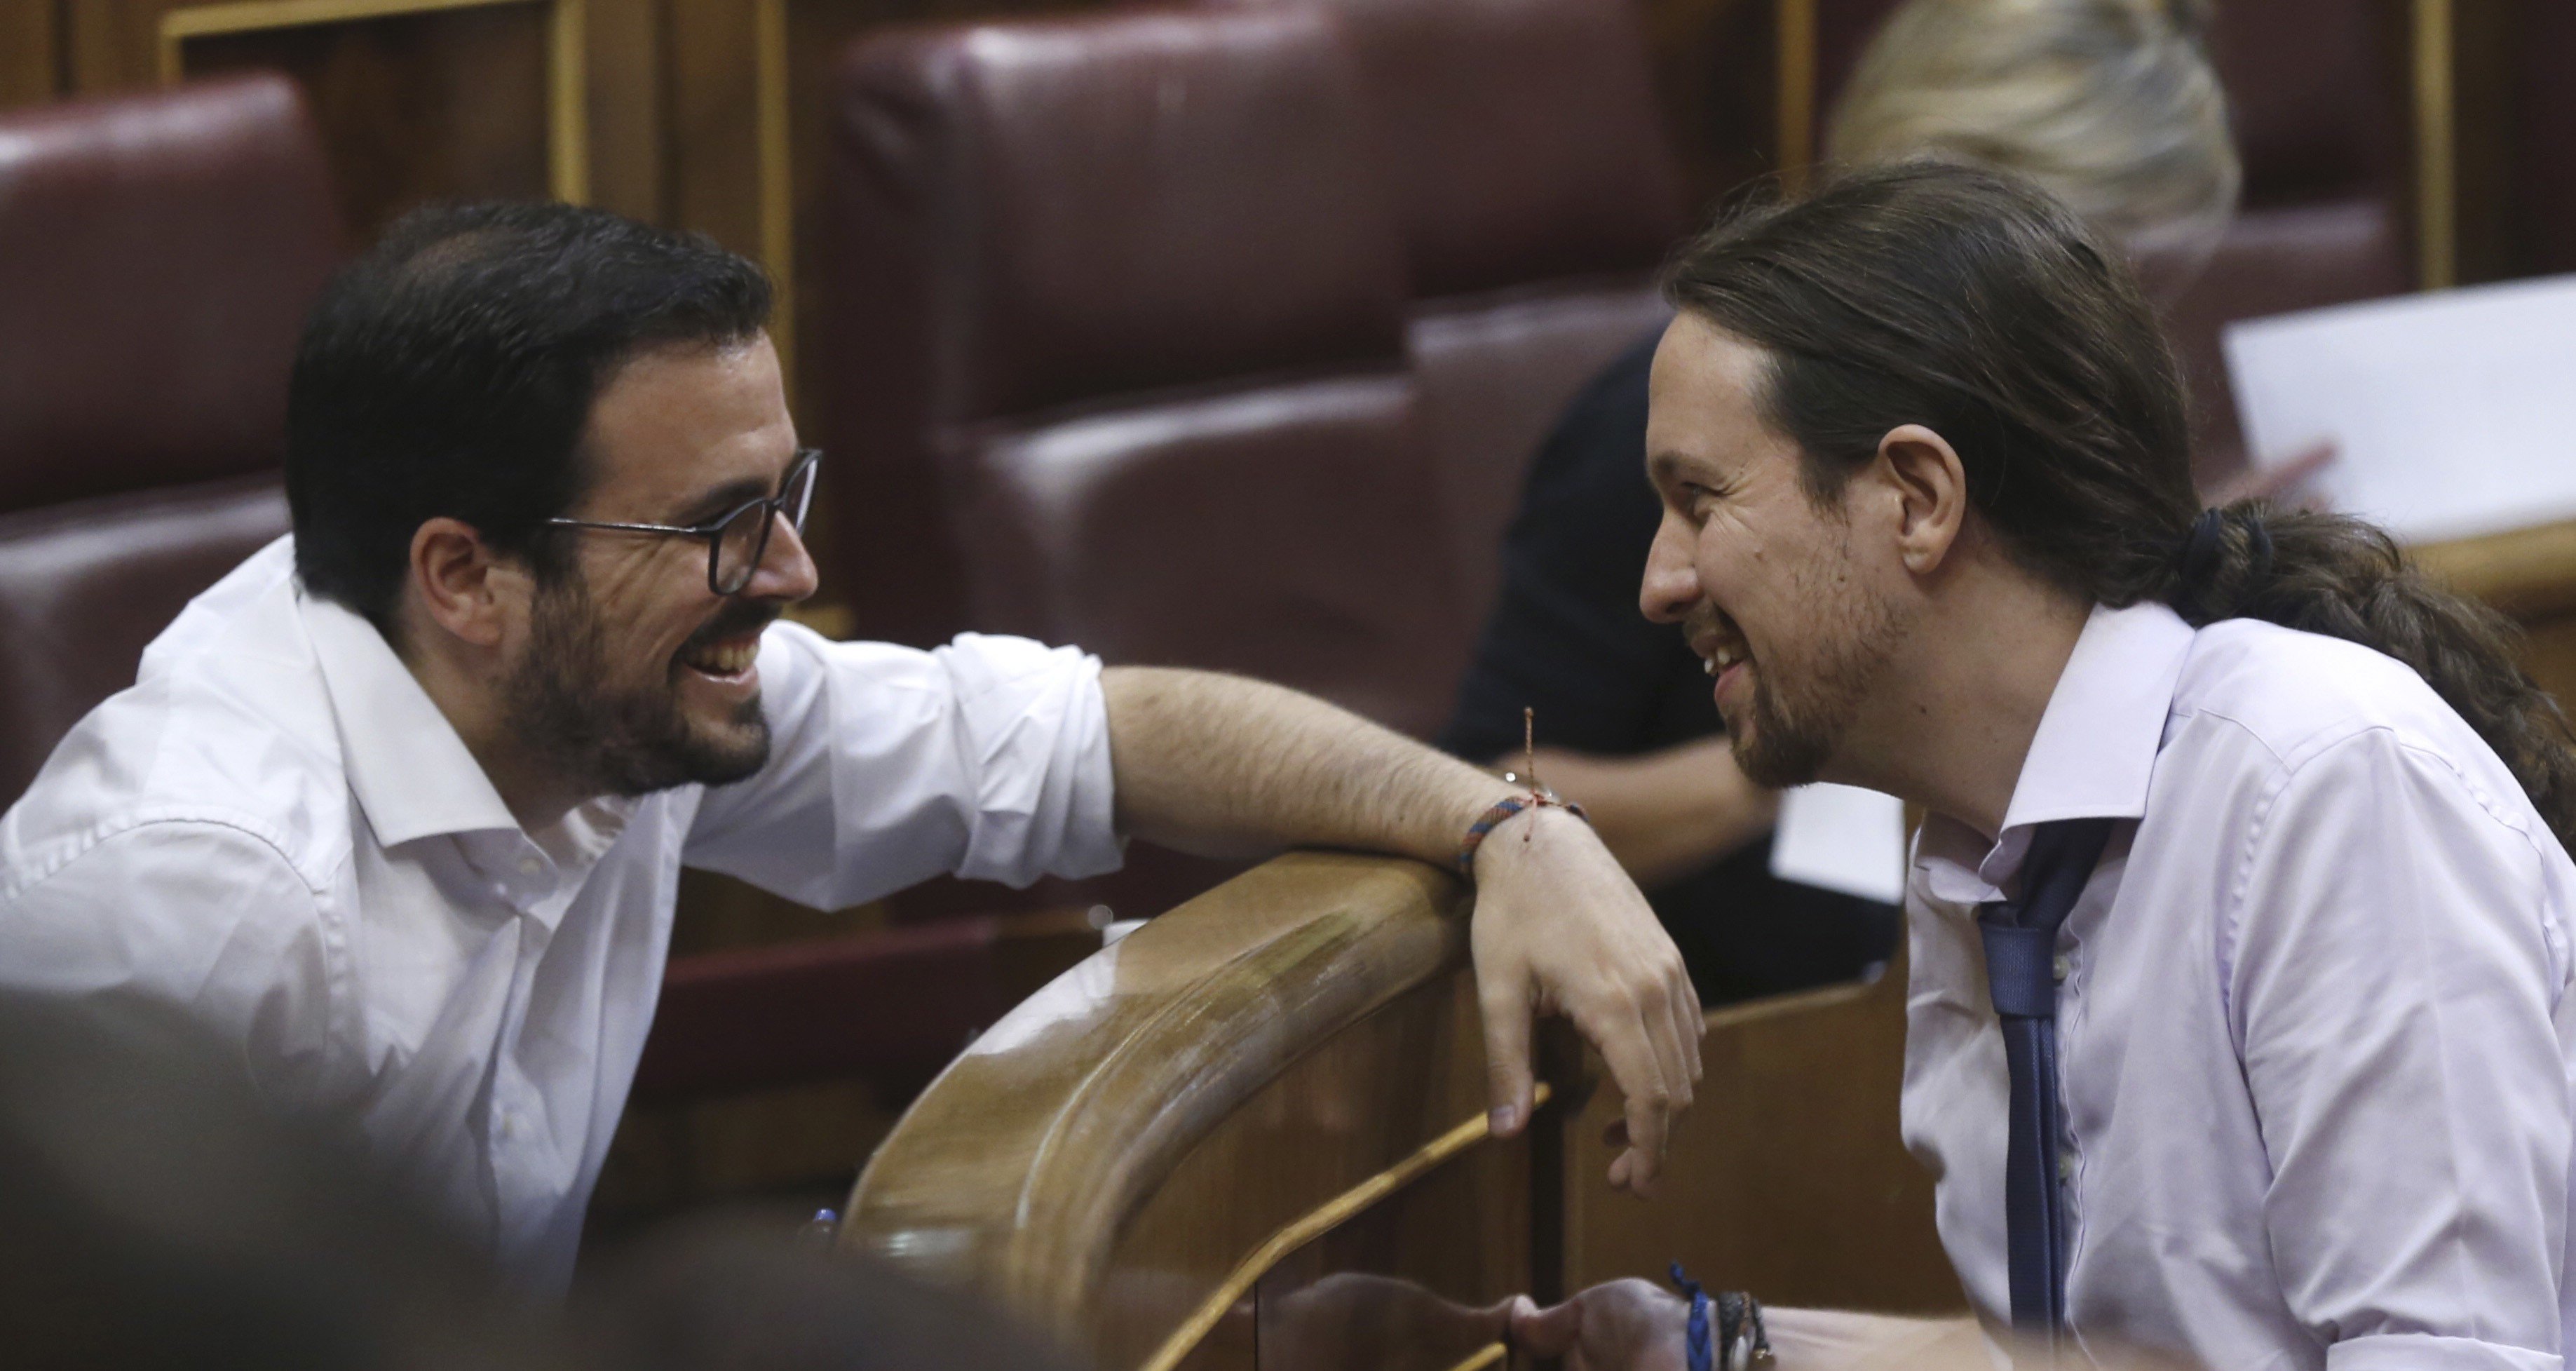 L'1-O divideix Podemos i en qüestiona la "plurinacionalitat"